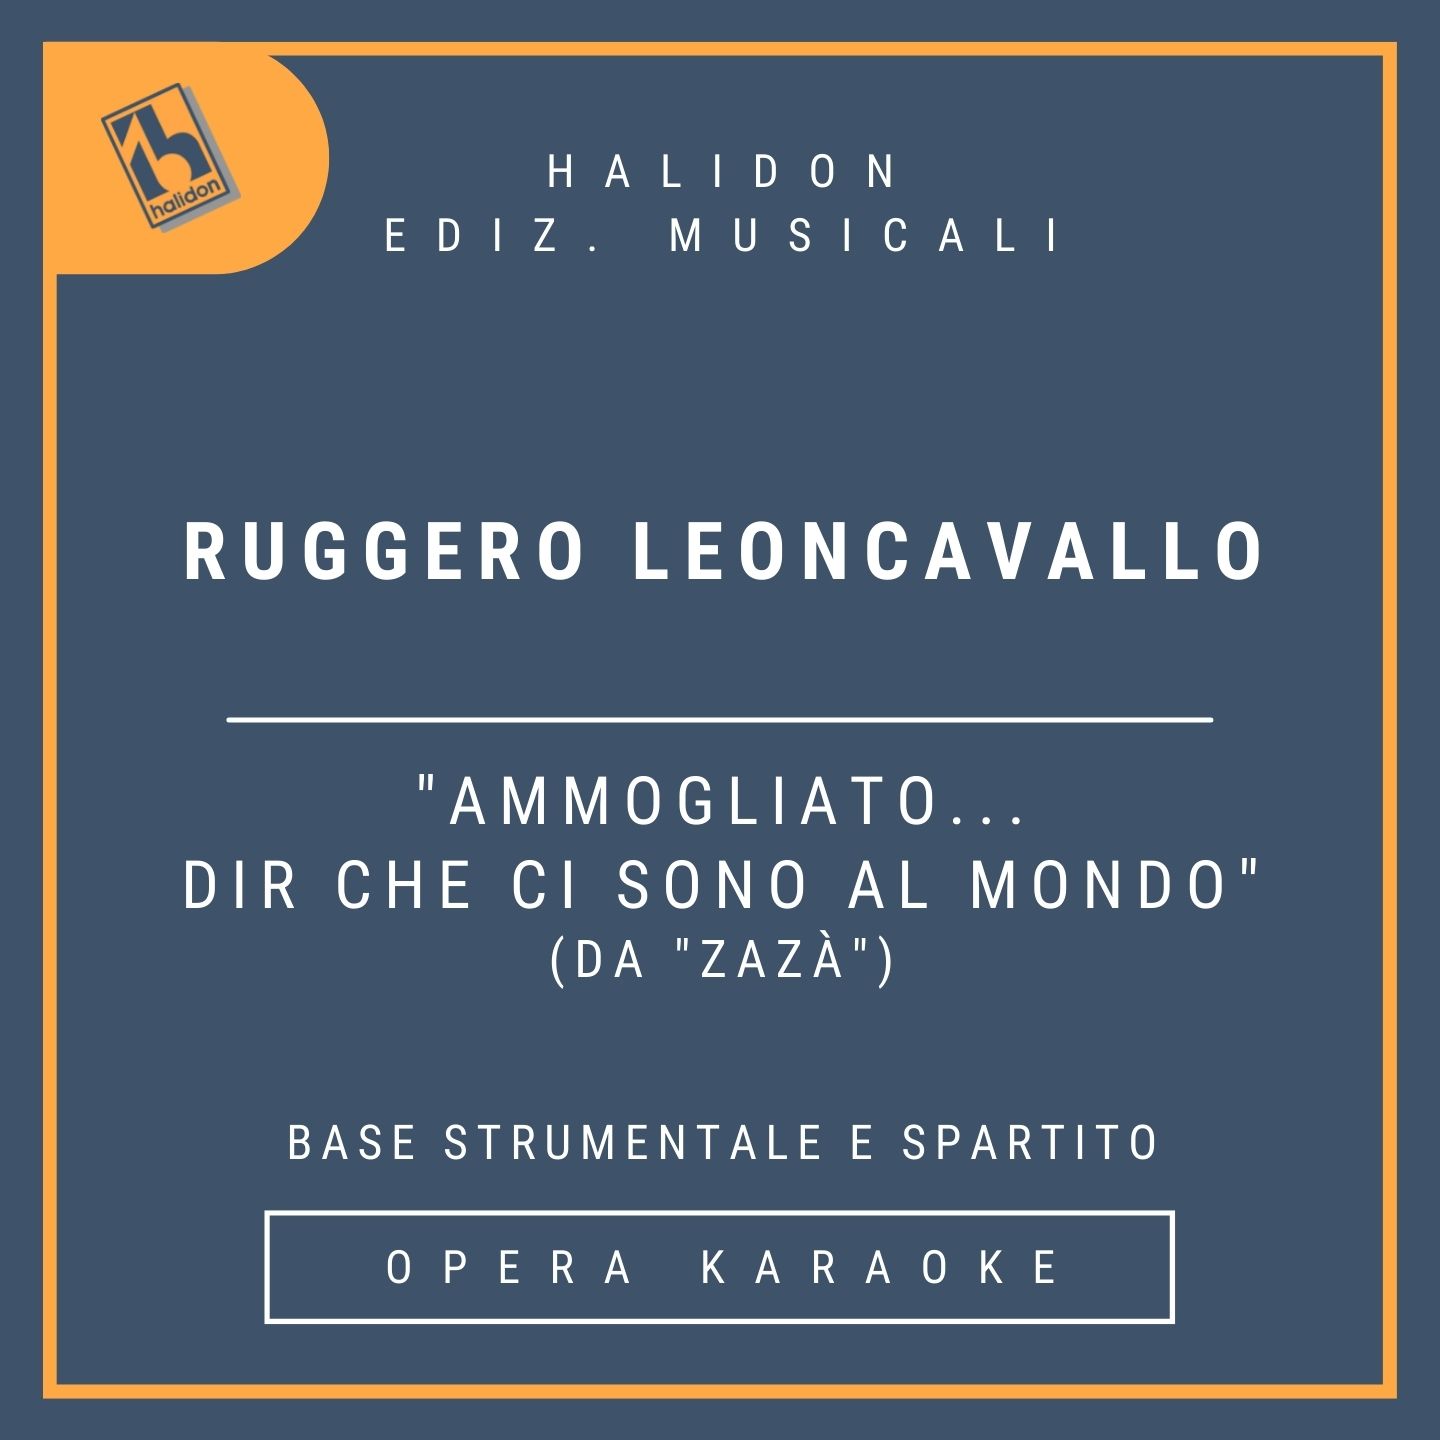 Ruggero Leoncavallo - Ammogliato... Dir che ci sono al mondo (da 'Zazà') - Aria di Zazà (soprano drammatico) - Base strumentale + spartito